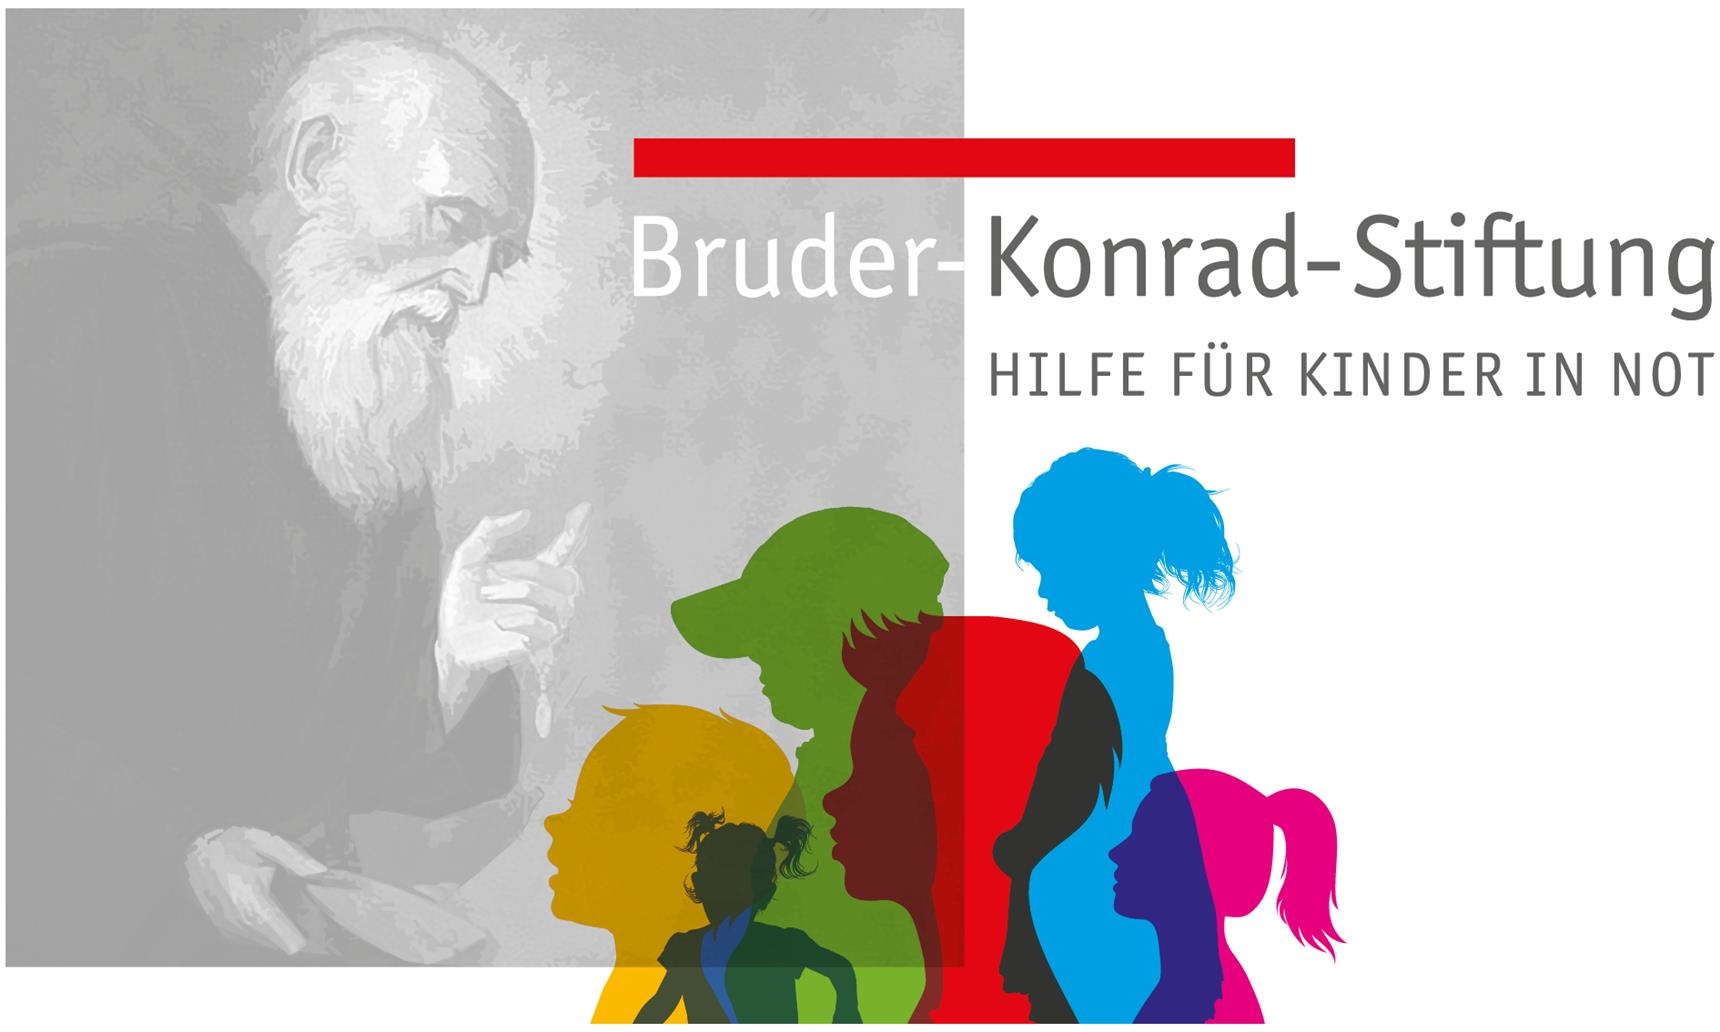 Bruder Konrad Stiftung